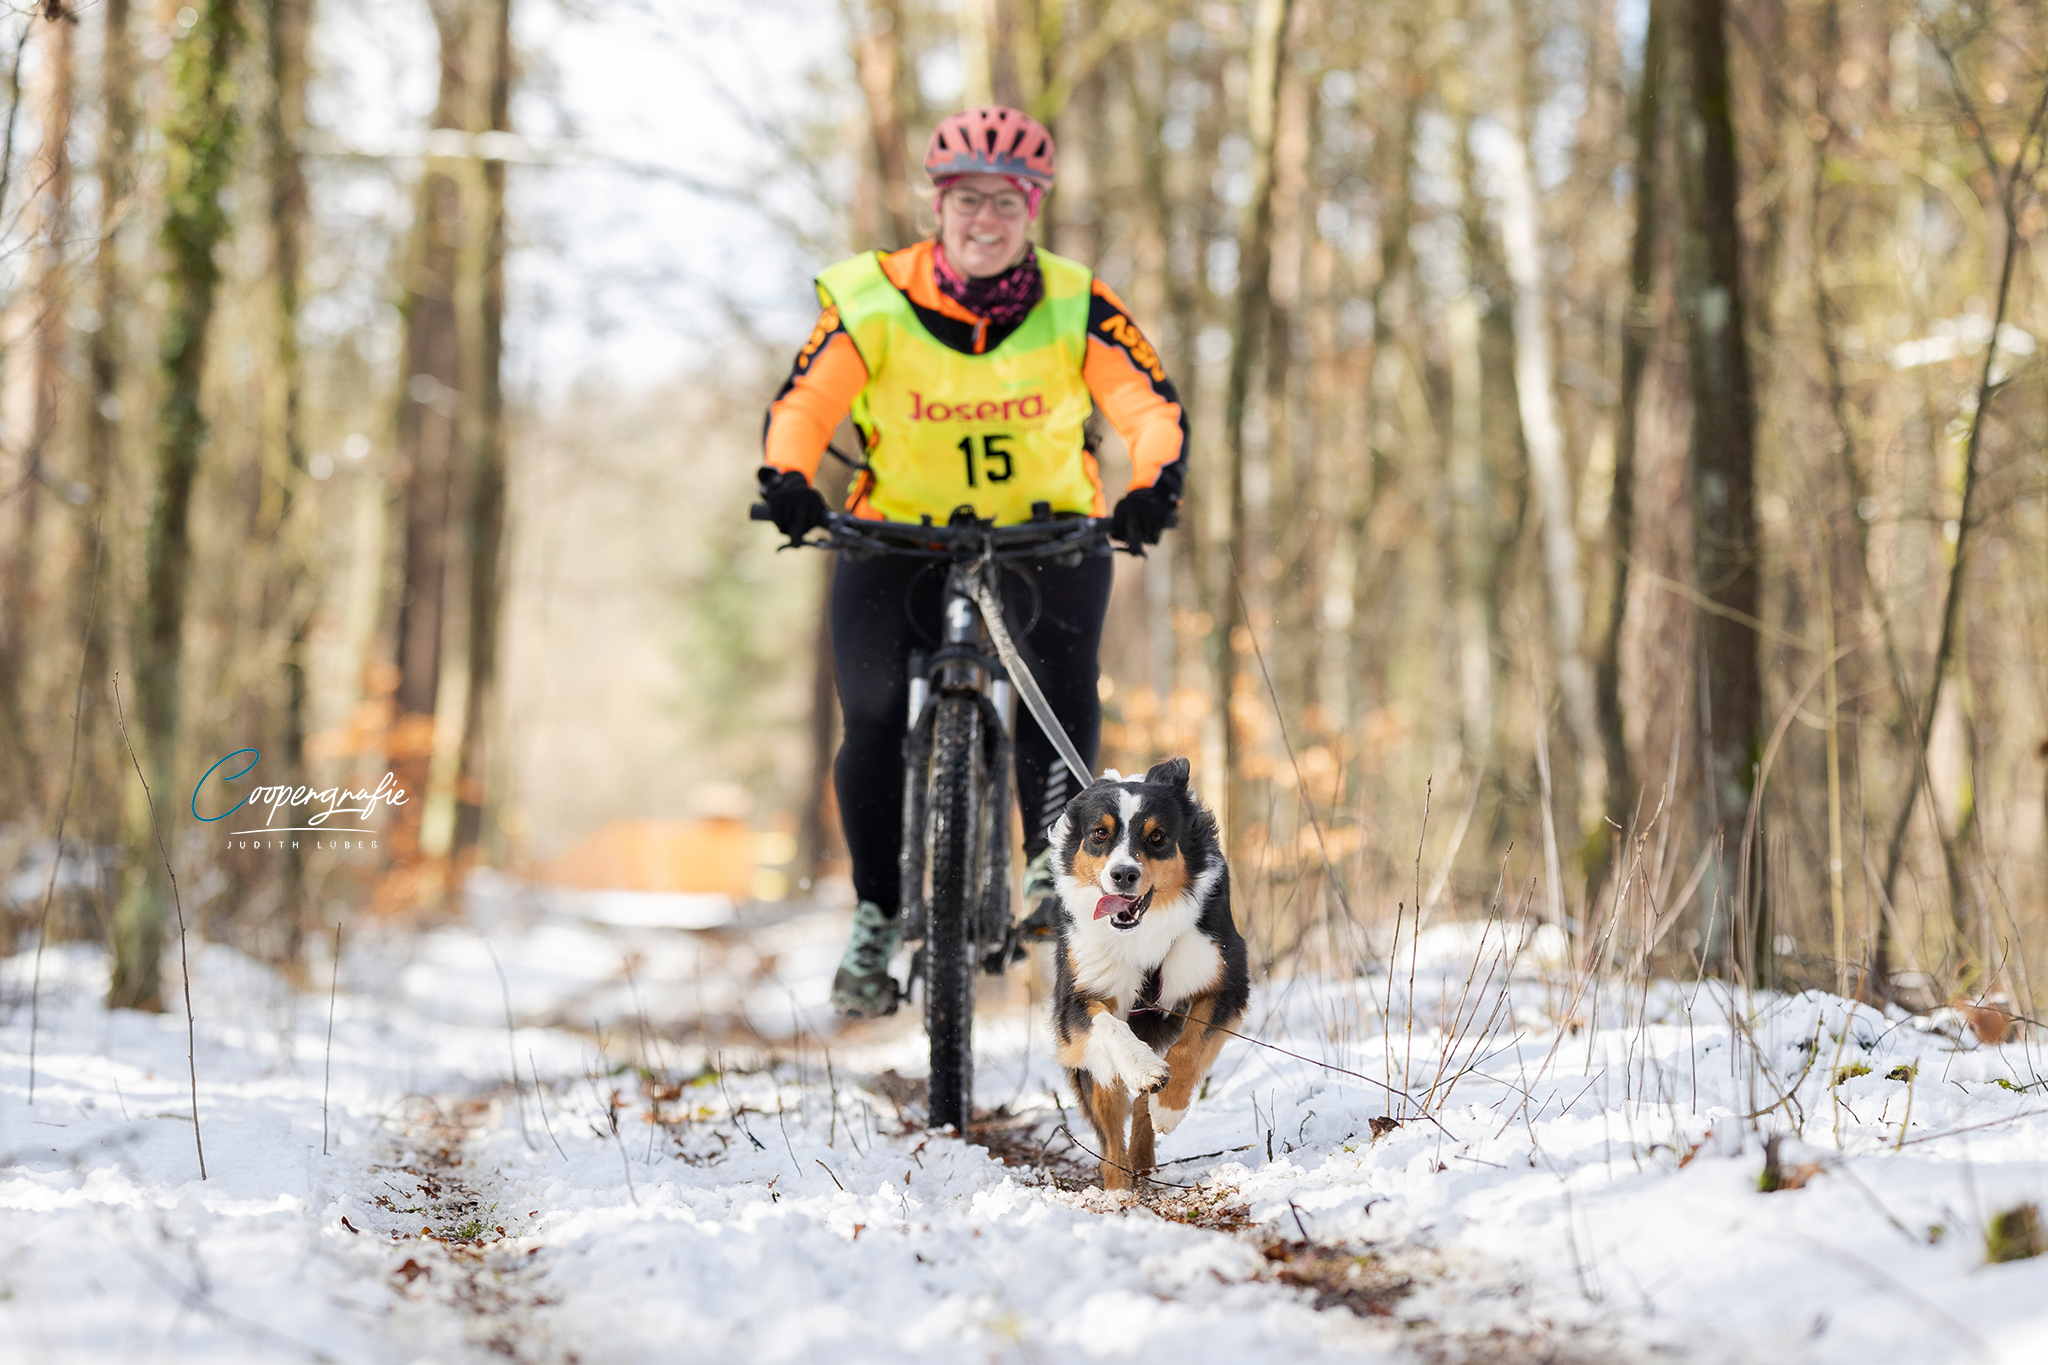 Bikejöring im Schnee beim Schlittenhunderennen in Kunrau fotografiert von Coopergrafie